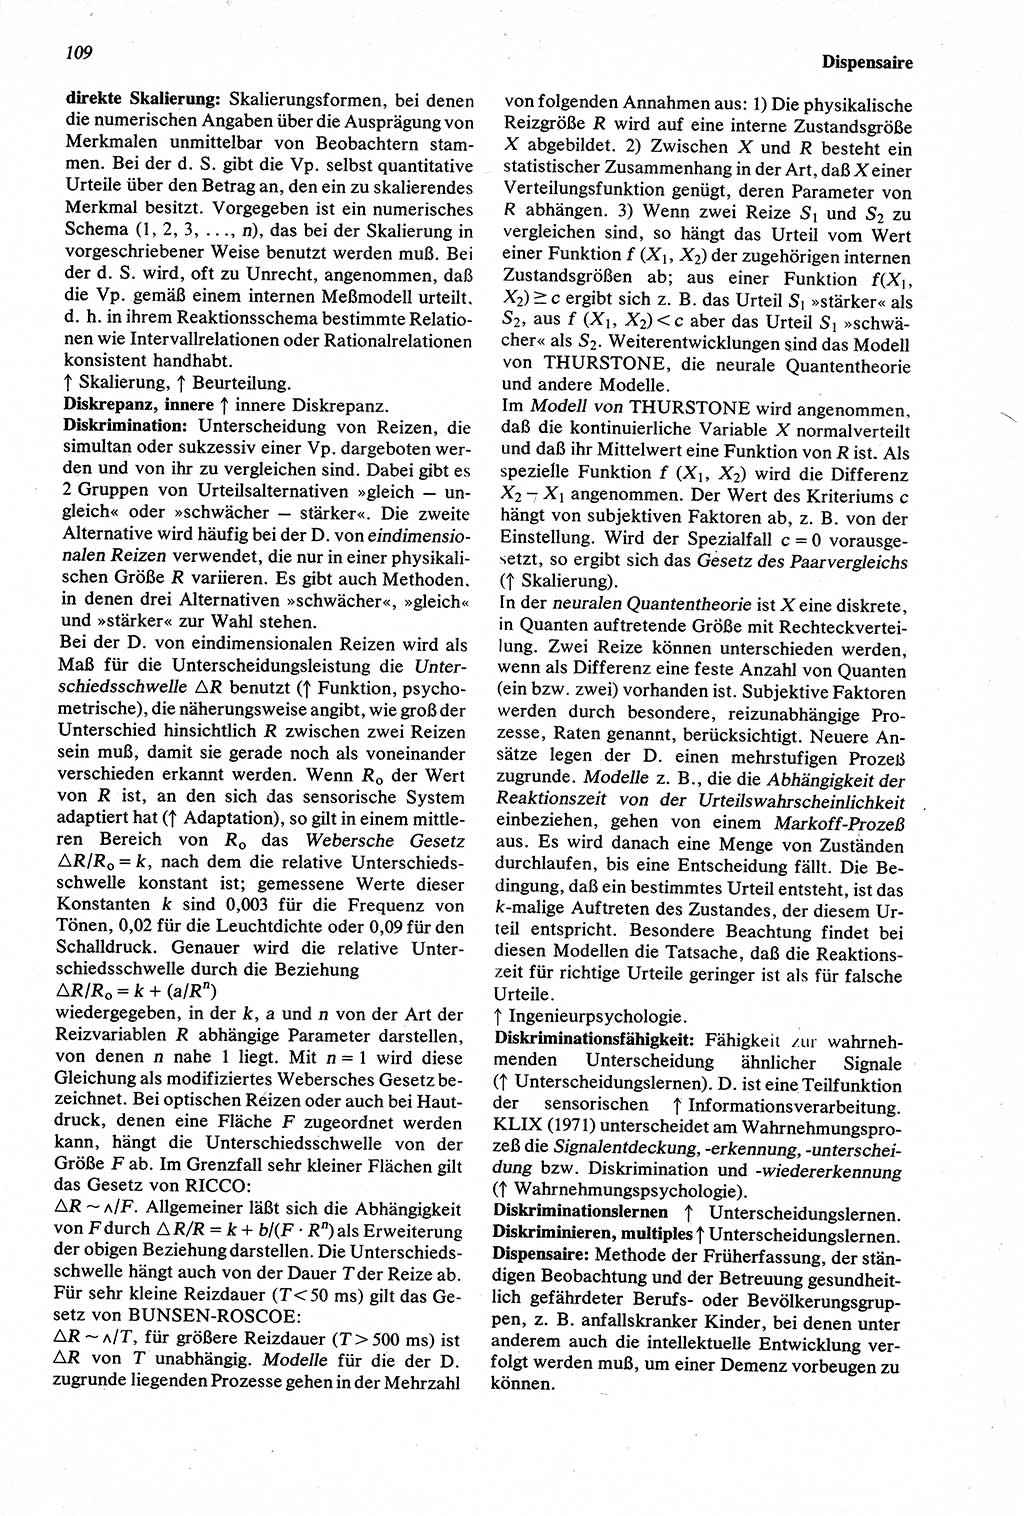 Wörterbuch der Psychologie [Deutsche Demokratische Republik (DDR)] 1976, Seite 109 (Wb. Psych. DDR 1976, S. 109)